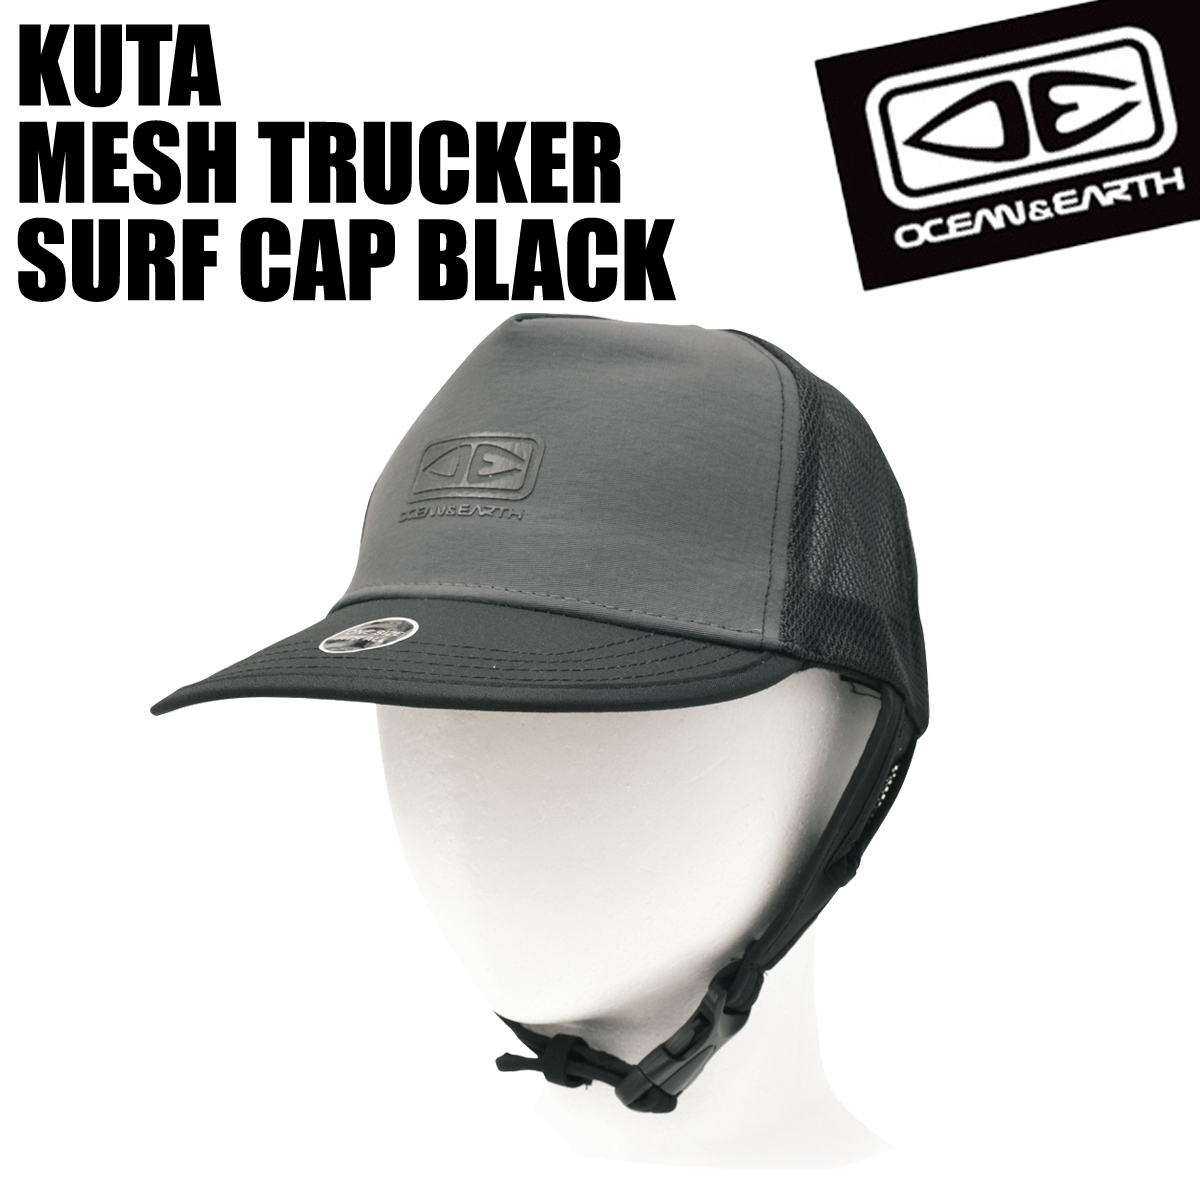 ☆大人気商品☆サーフィン サーフボード 初心者 BLACK TRUCKER ビギナー MESH キャップ 軽量 帽子 KUTA サーフキャップ  SURF CAP フリーサイズ 速乾 OCEANEARTH 帽子、キャップ